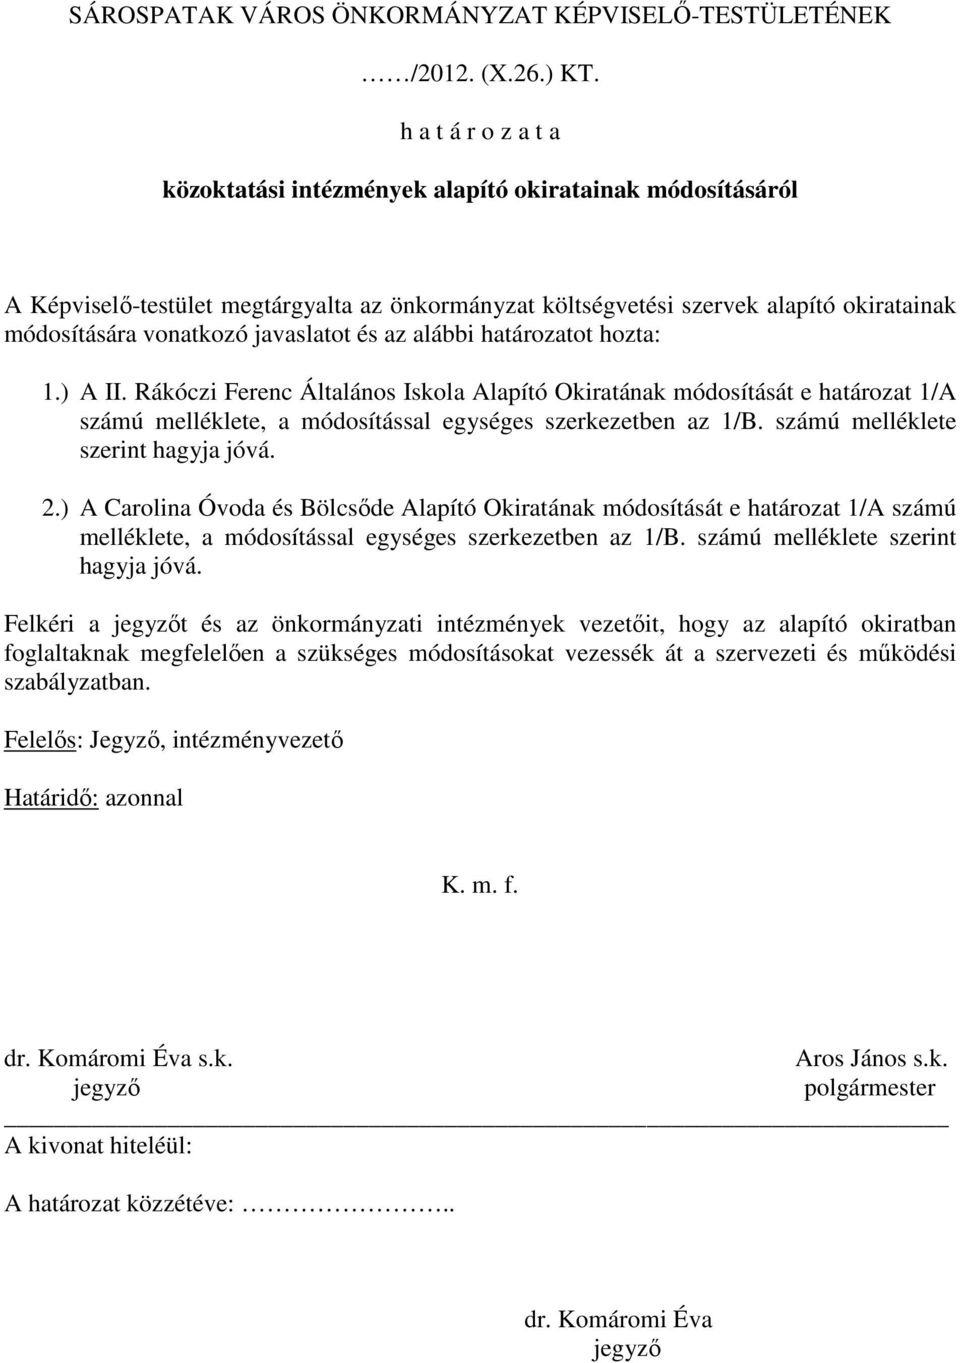 javaslatot és az alábbi határozatot hozta: 1.) A II. Rákóczi Ferenc Általános Iskola Alapító Okiratának módosítását e határozat 1/A számú melléklete, a módosítással egységes szerkezetben az 1/B.